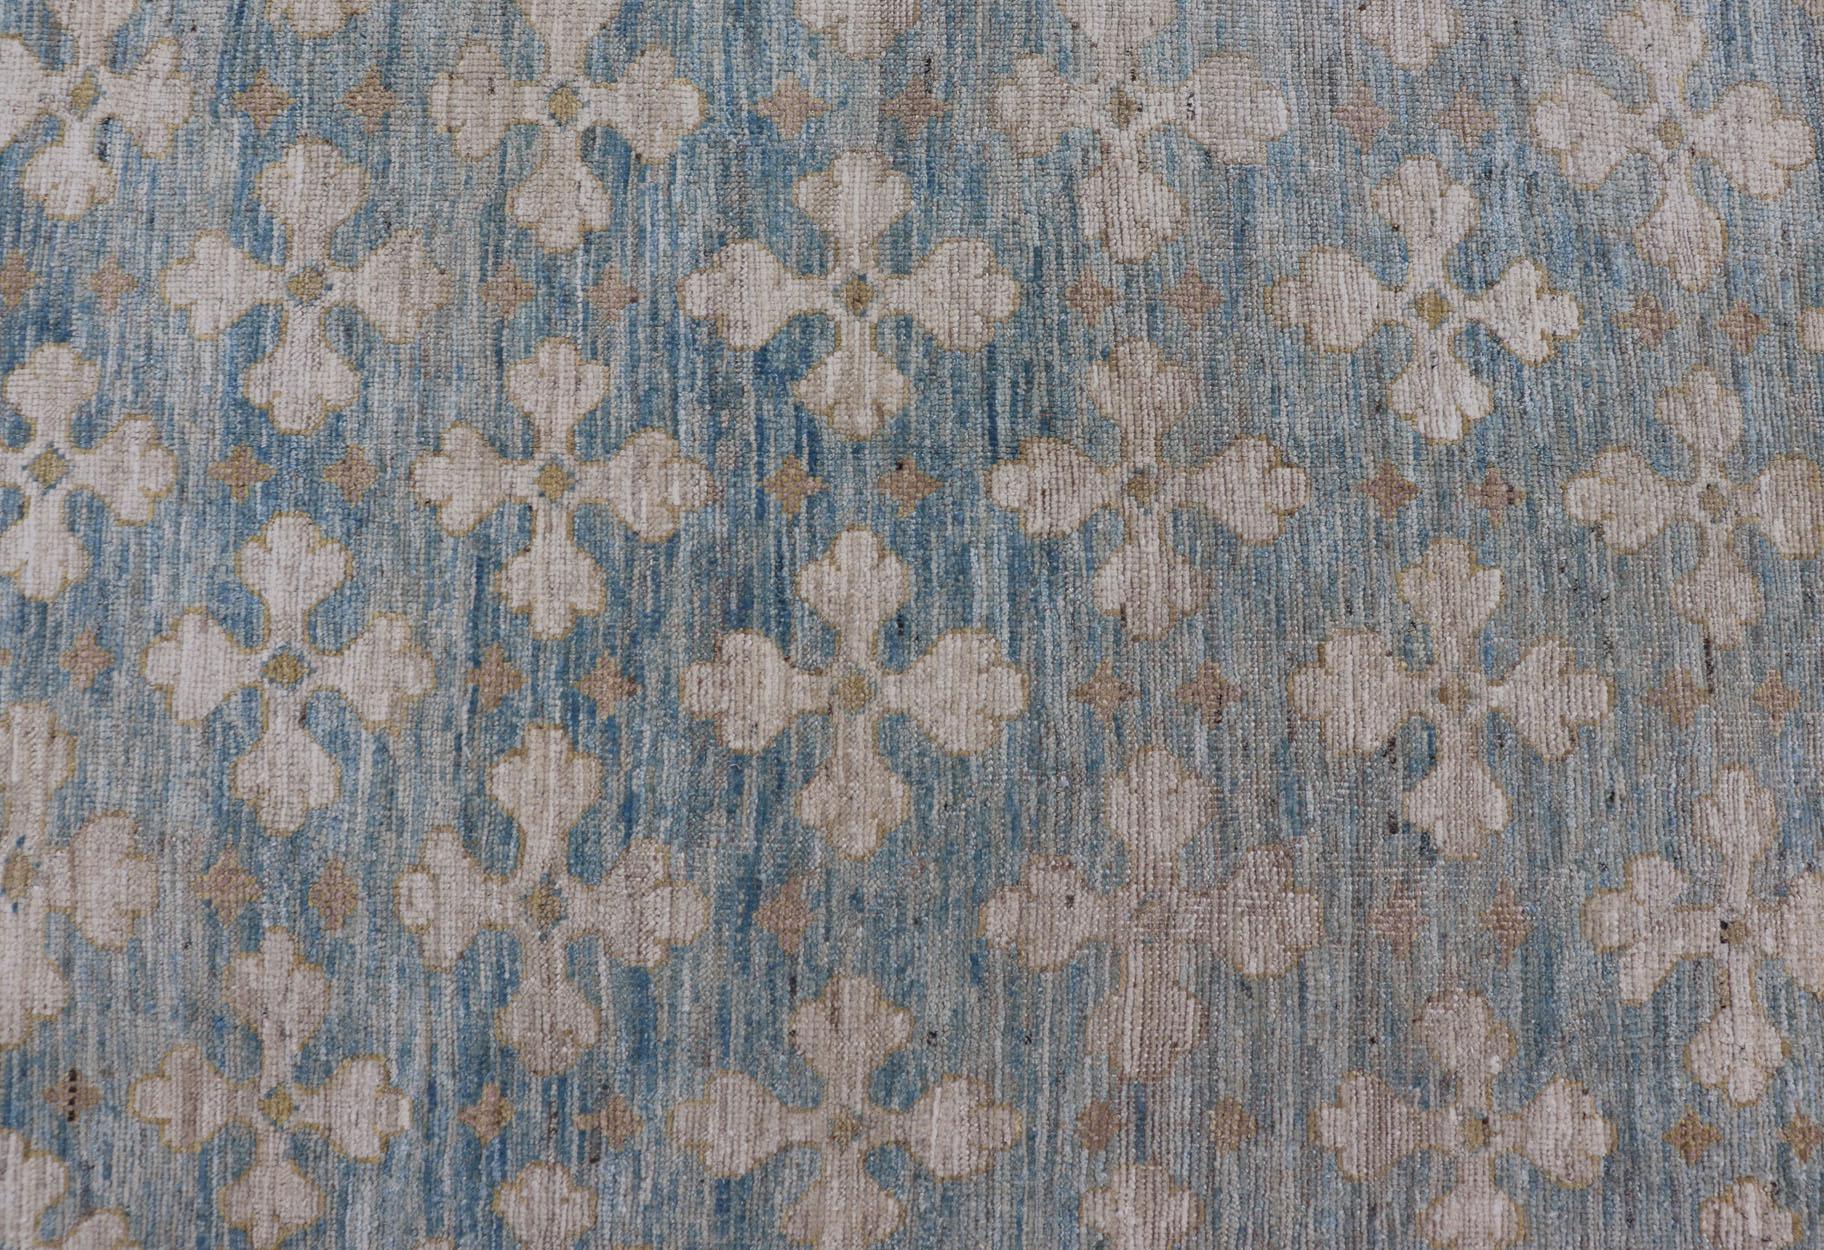 Maße: 8'3 x 15'2 

Dieser große Galerie-Teppich von Keivan Woven Arts mit Khotan-Design wurde im Norden Afghanistans aus feinster Wolle hergestellt.  
